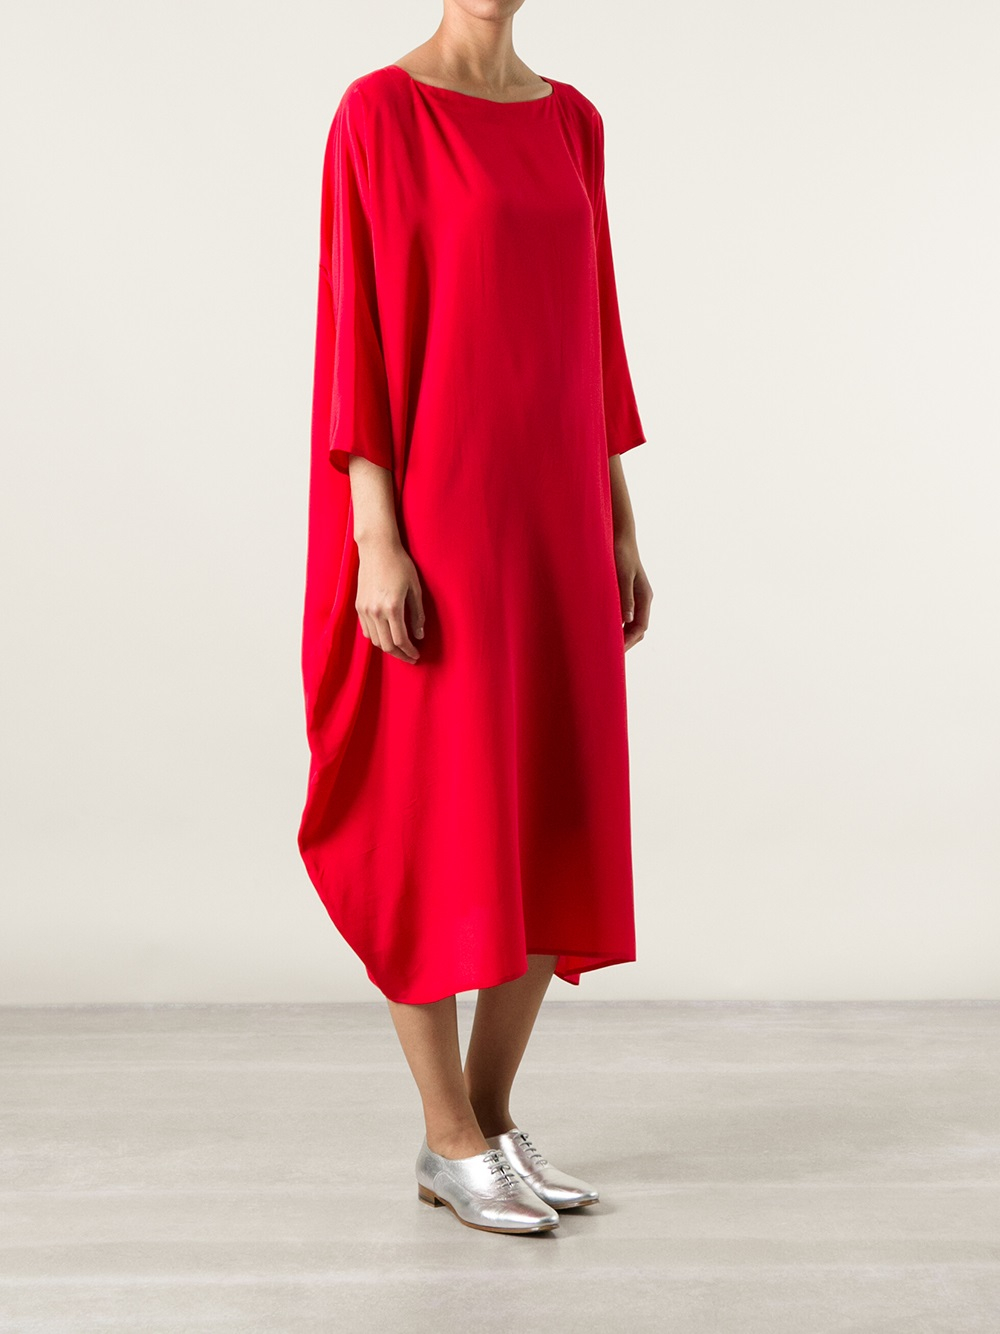 Lyst - Daniela Gregis Boxy Jersey Dress in Red